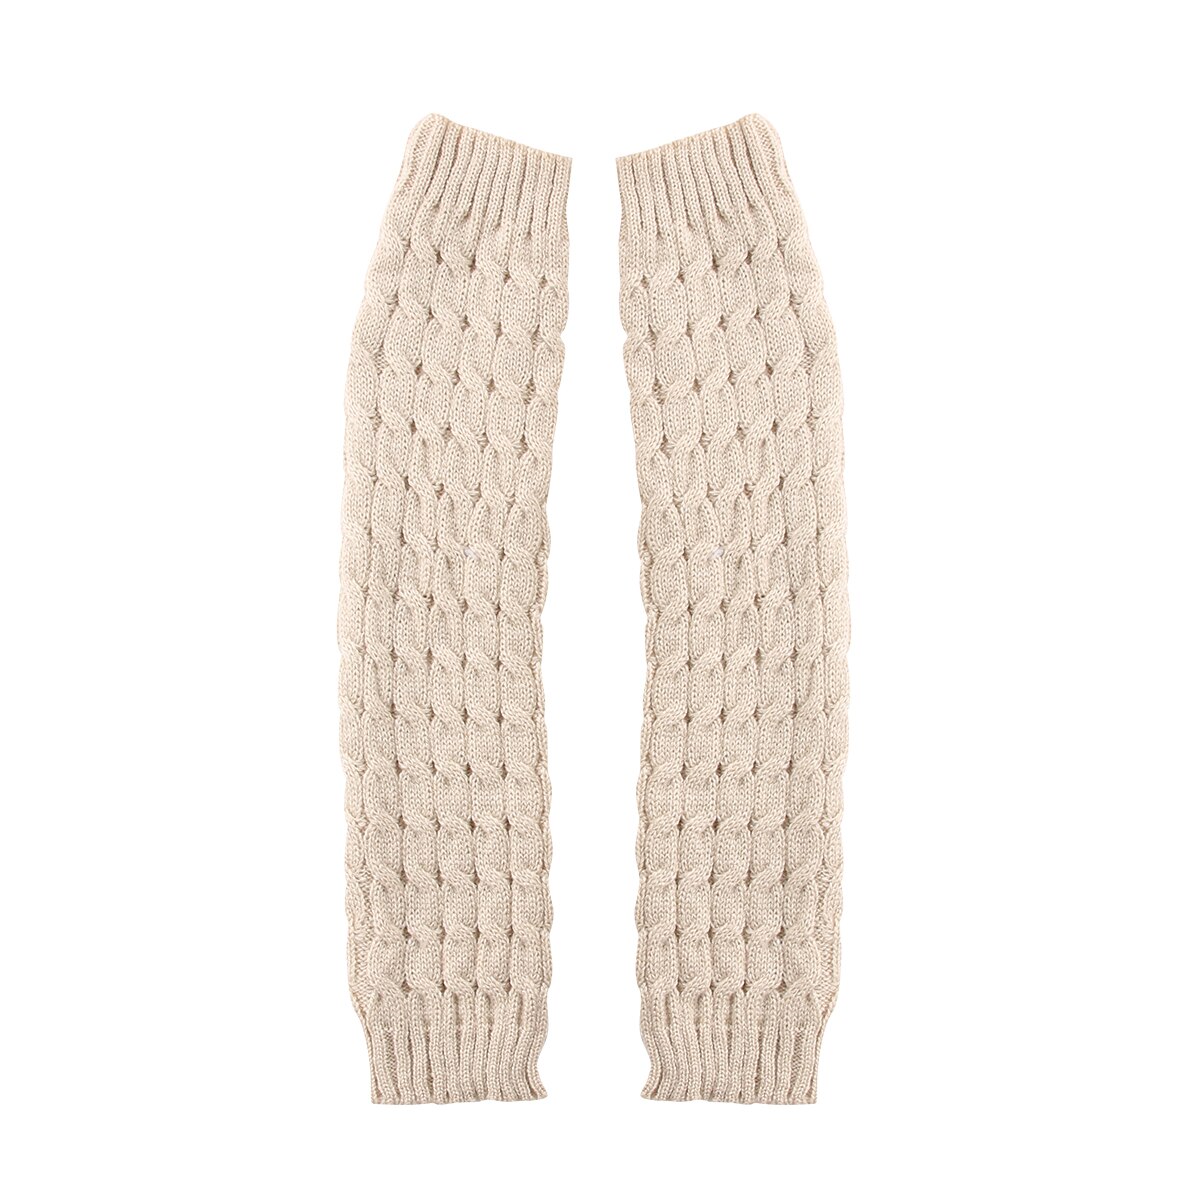 Kvinder damer vinter varm strik høj knæ benopvarmere hæklede leggings støvler sort hvid beige lyserød: Beige